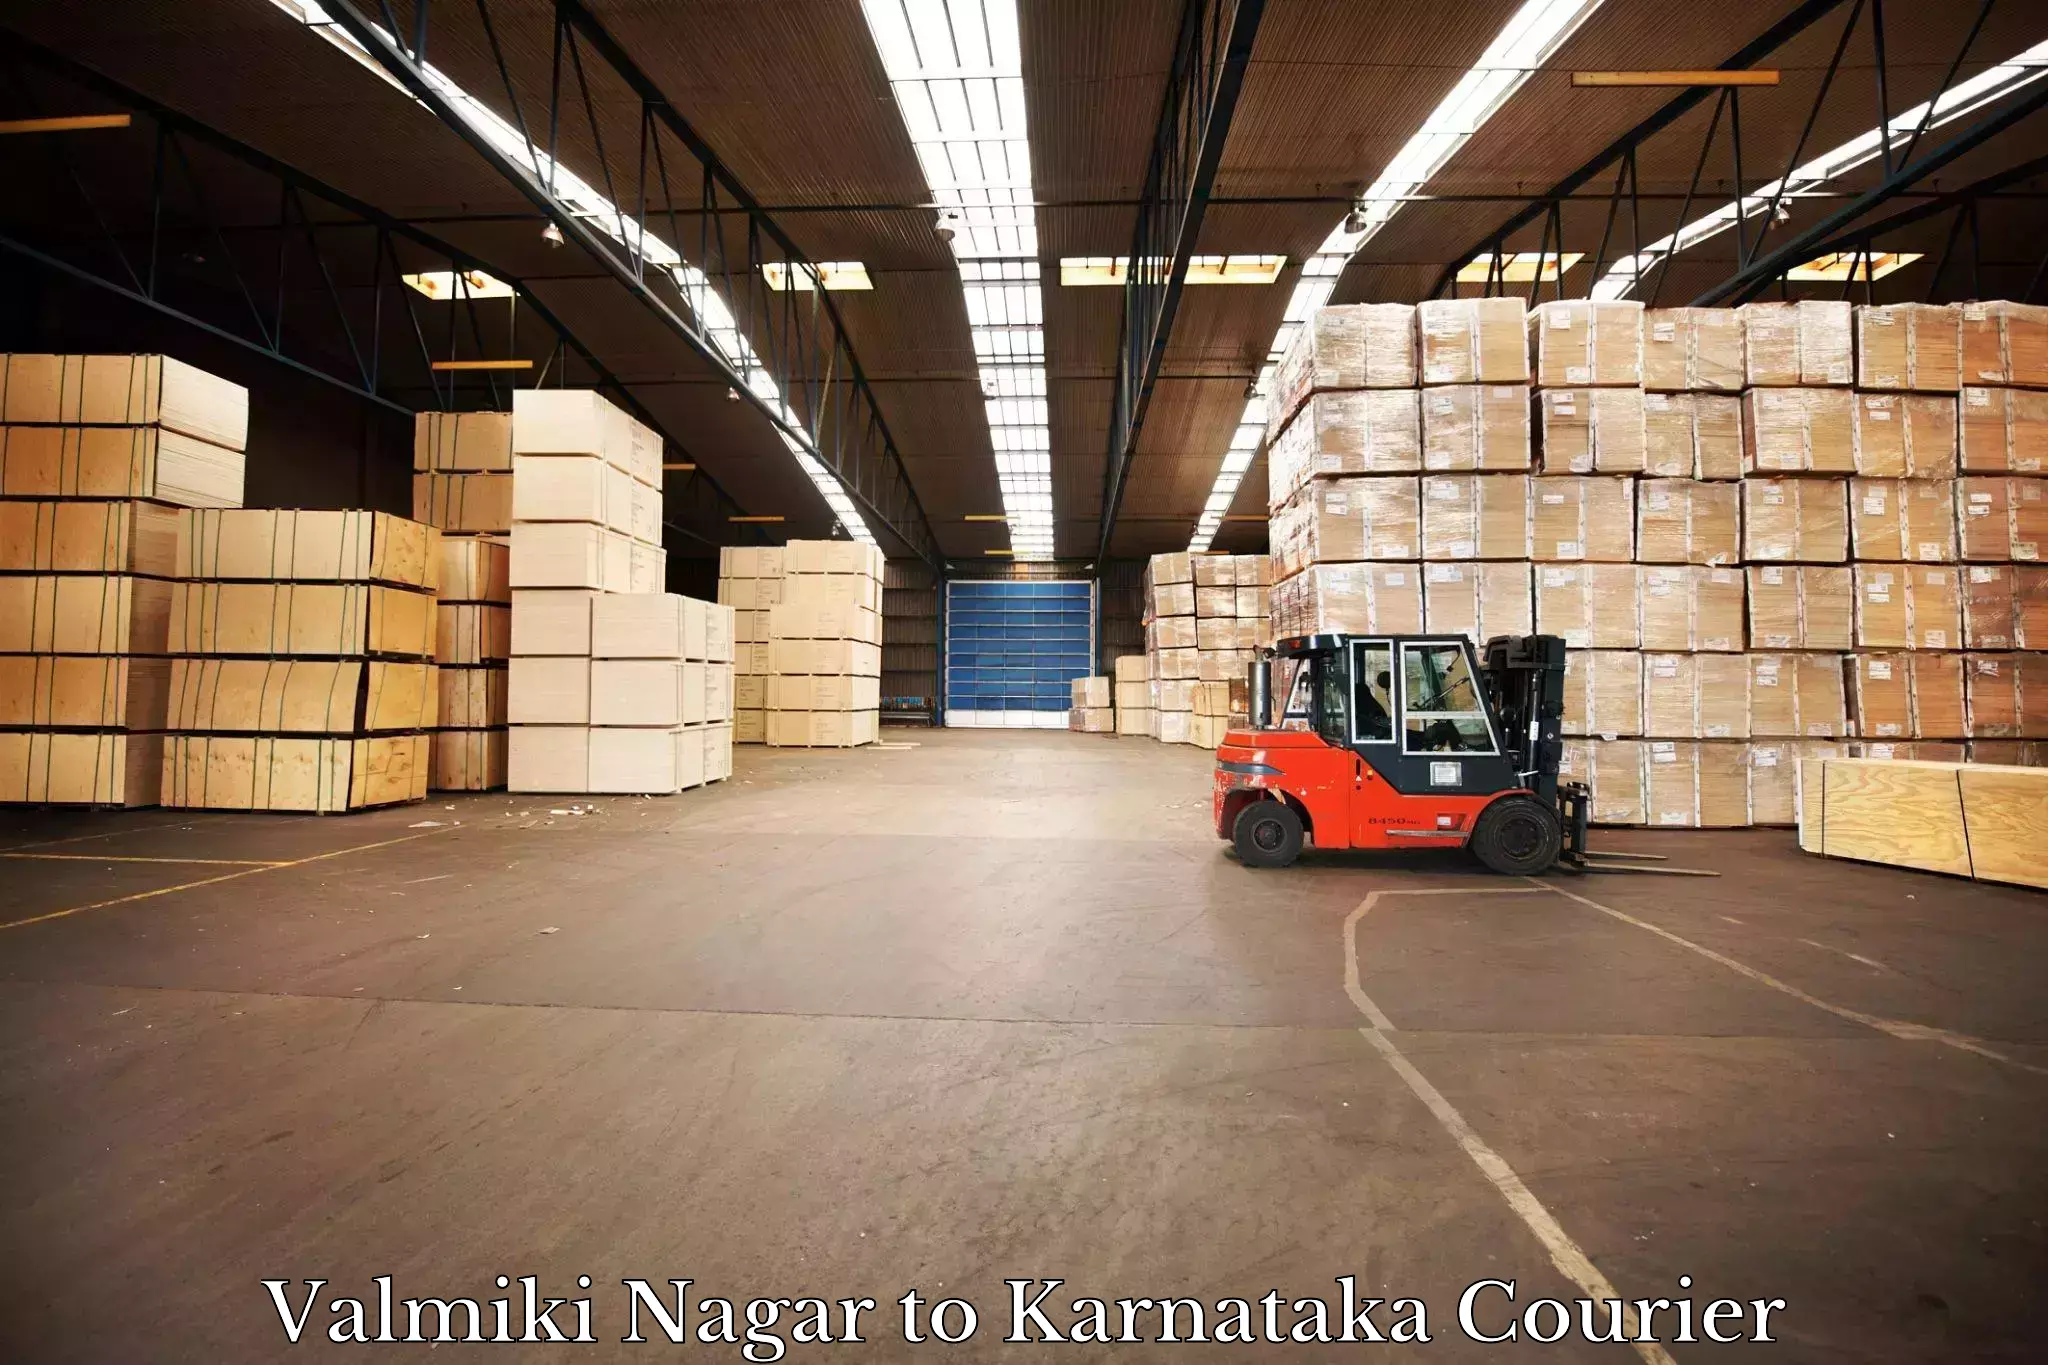 Advanced parcel tracking Valmiki Nagar to Kanjarakatte